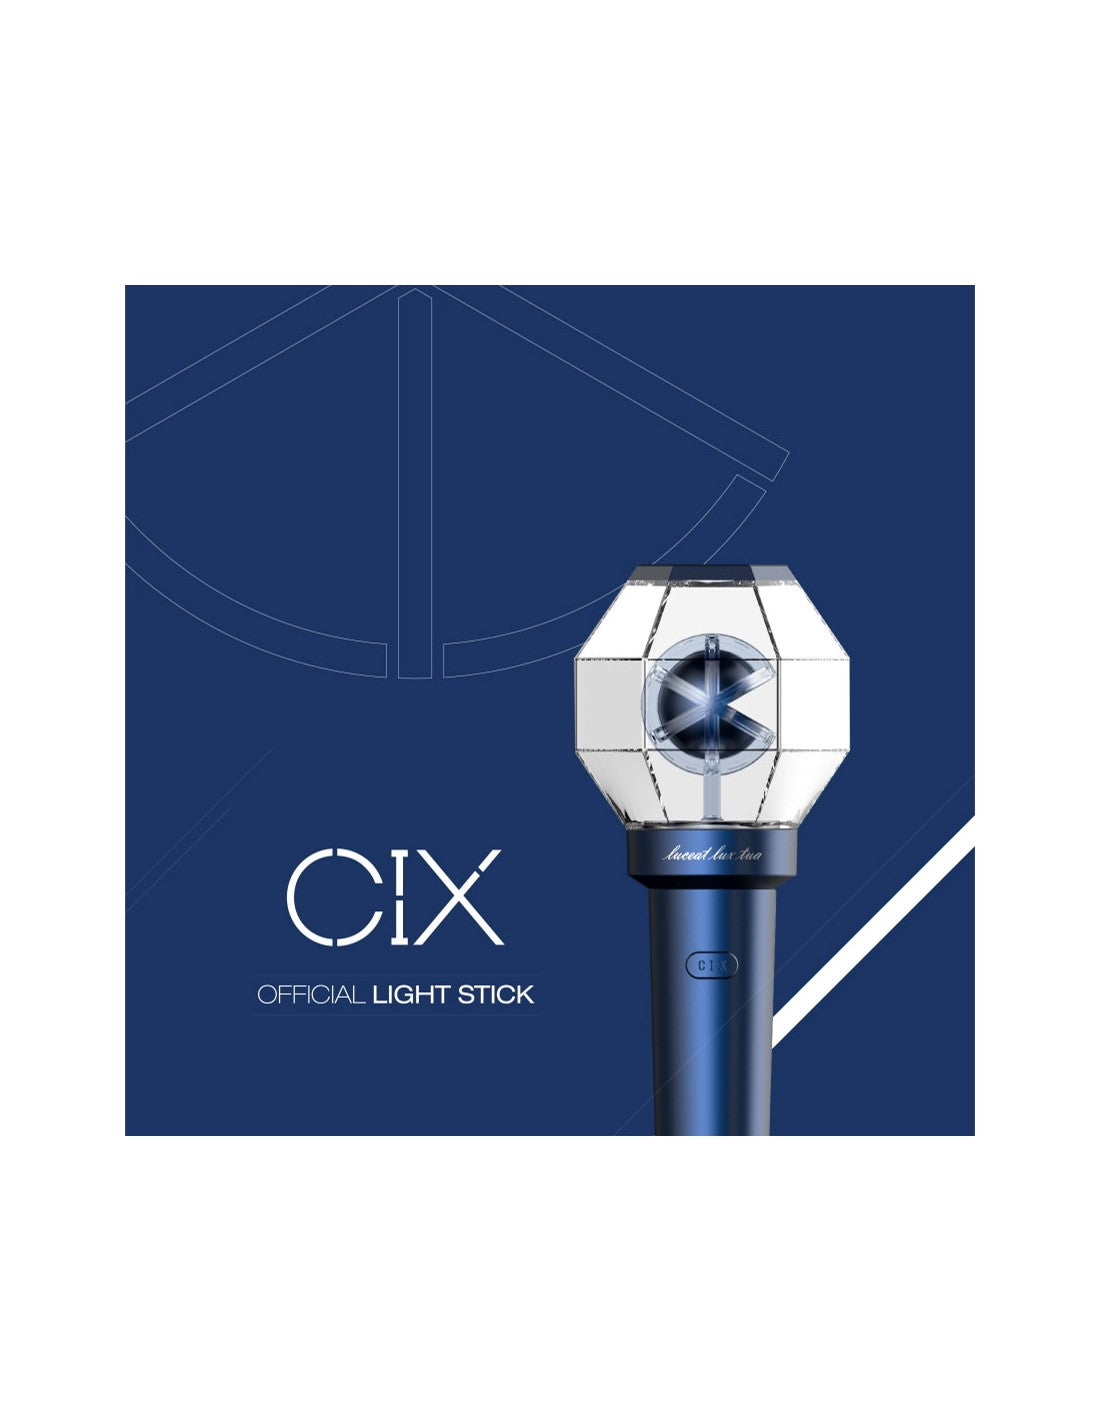 CIX lightstick